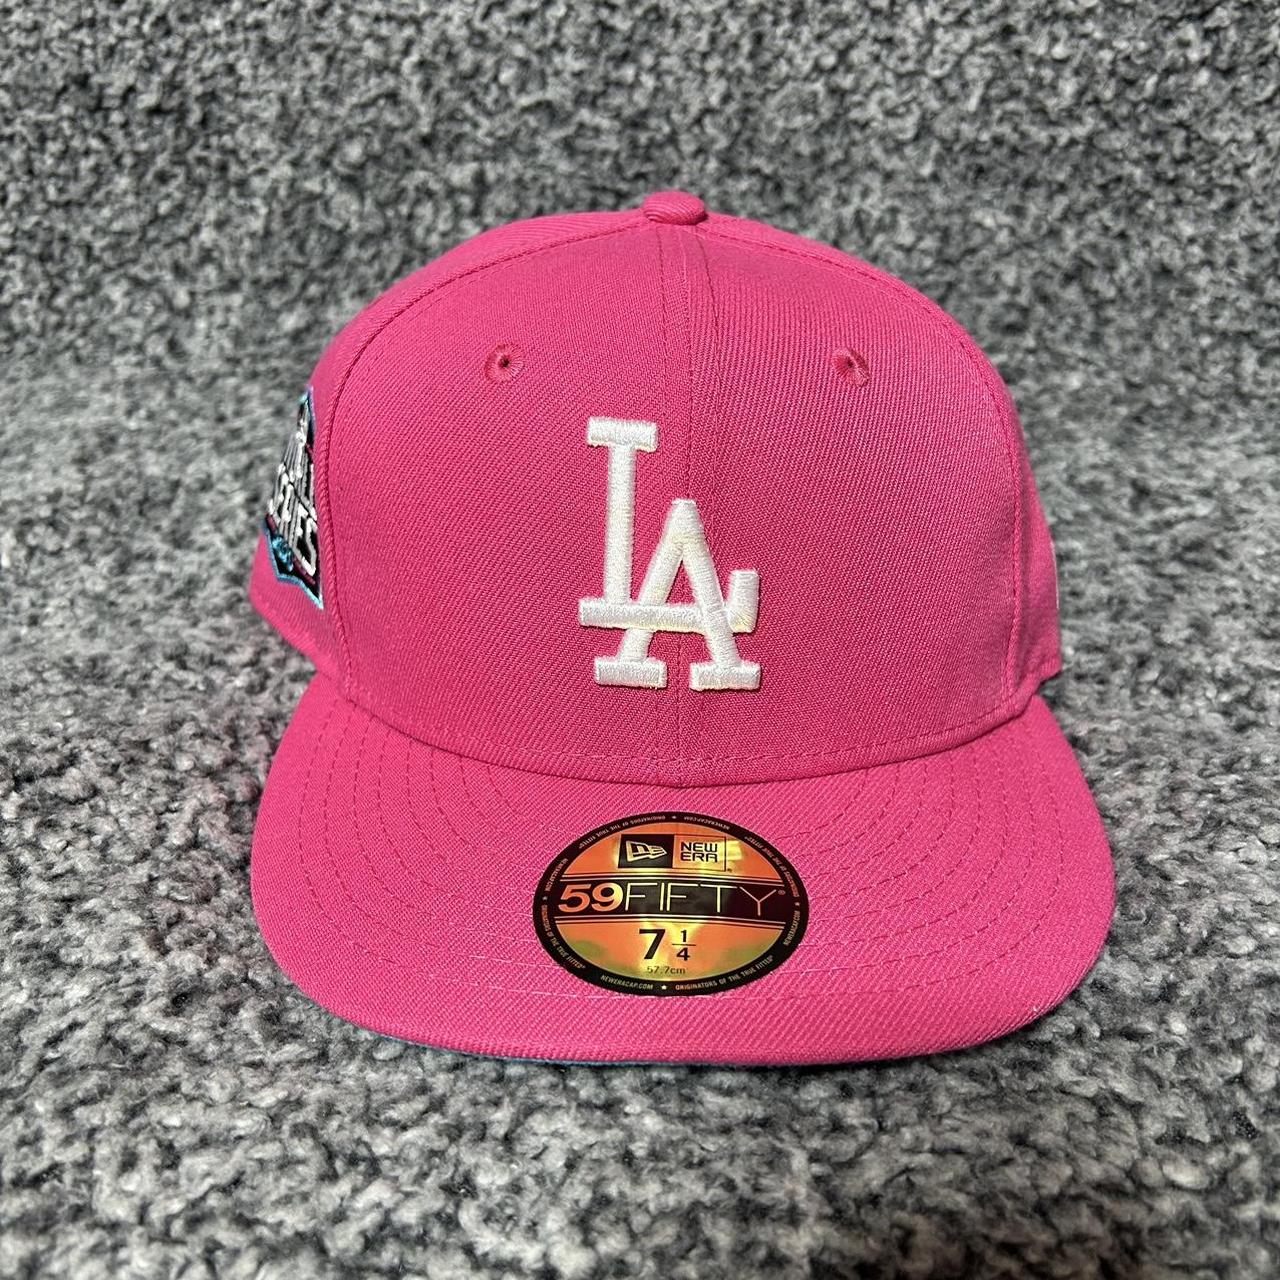 New Era Men's Caps - Pink